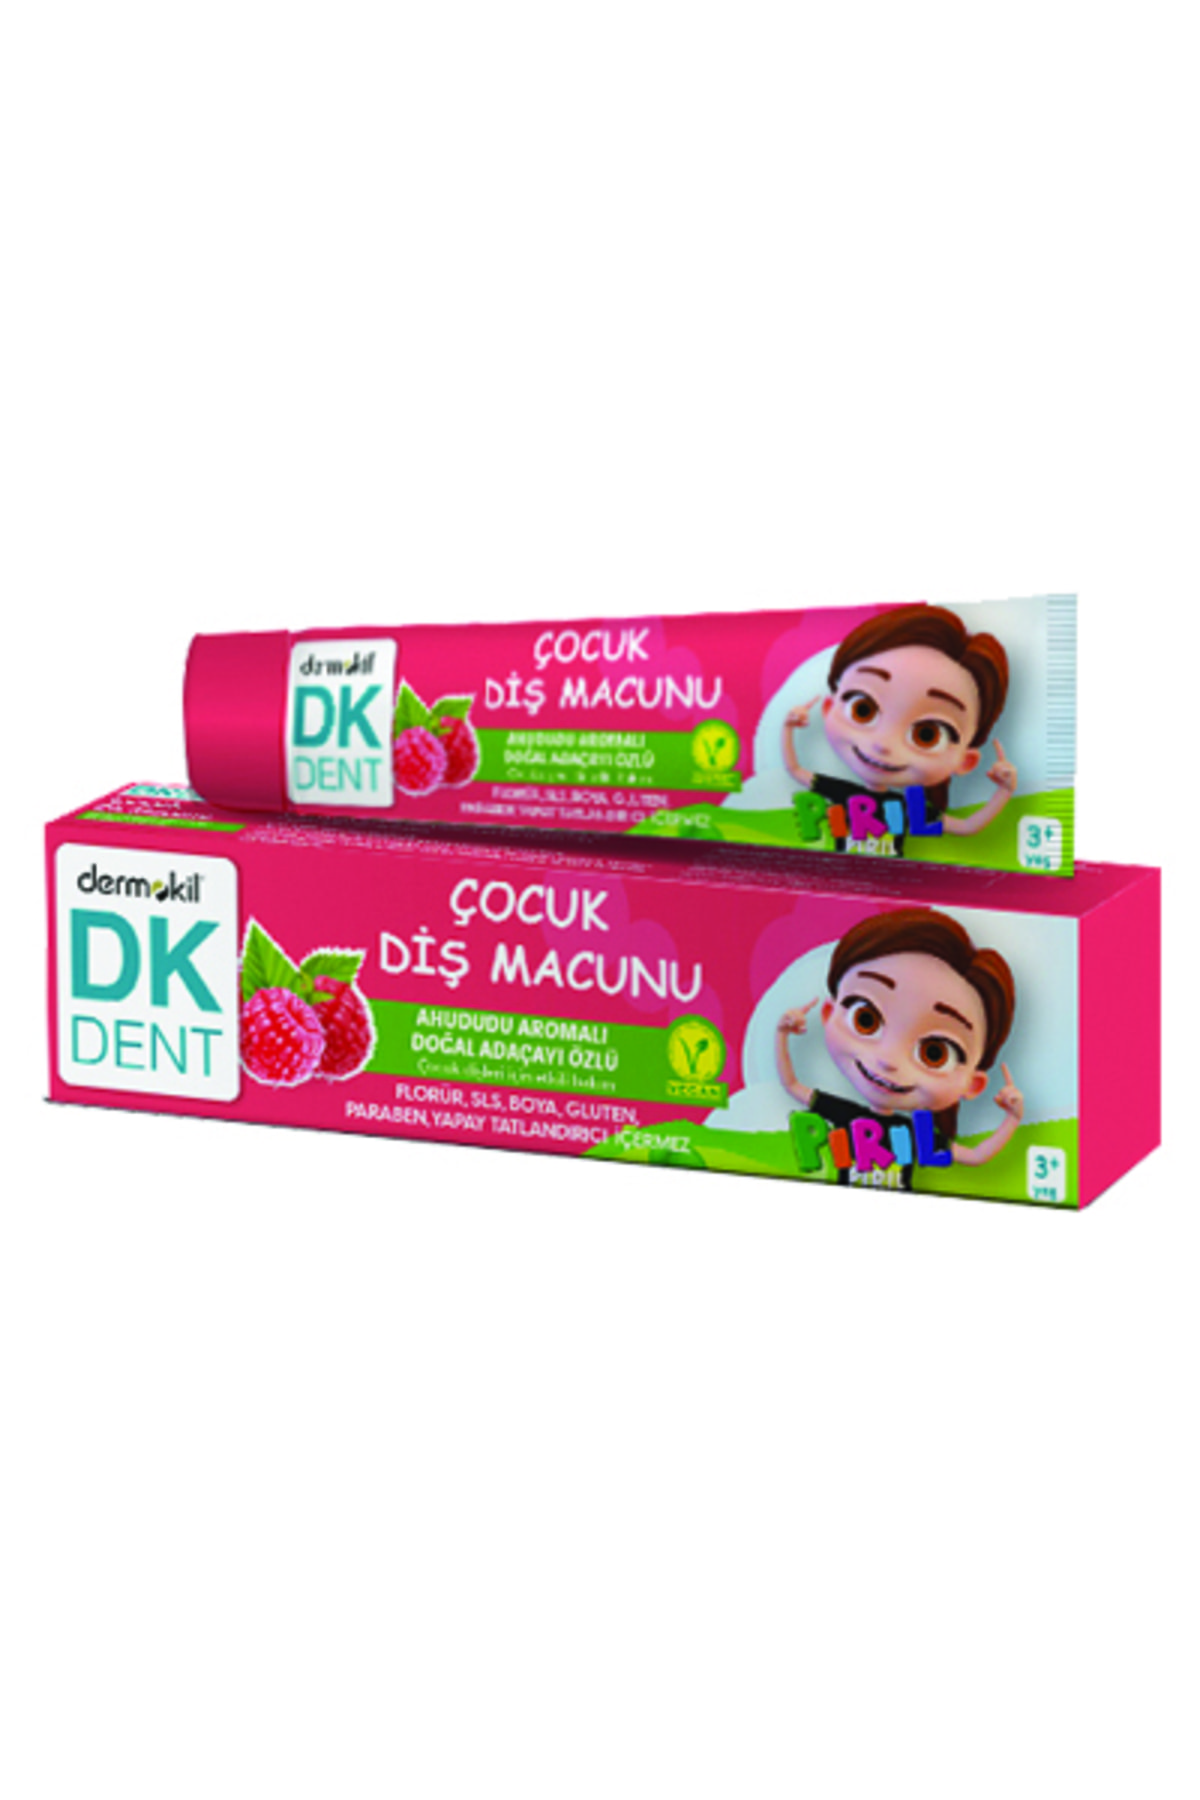 Dermokil Dk Dent Pırıl Ahududu Aromalı Vegan Çocuk Diş Macunu 50 ml